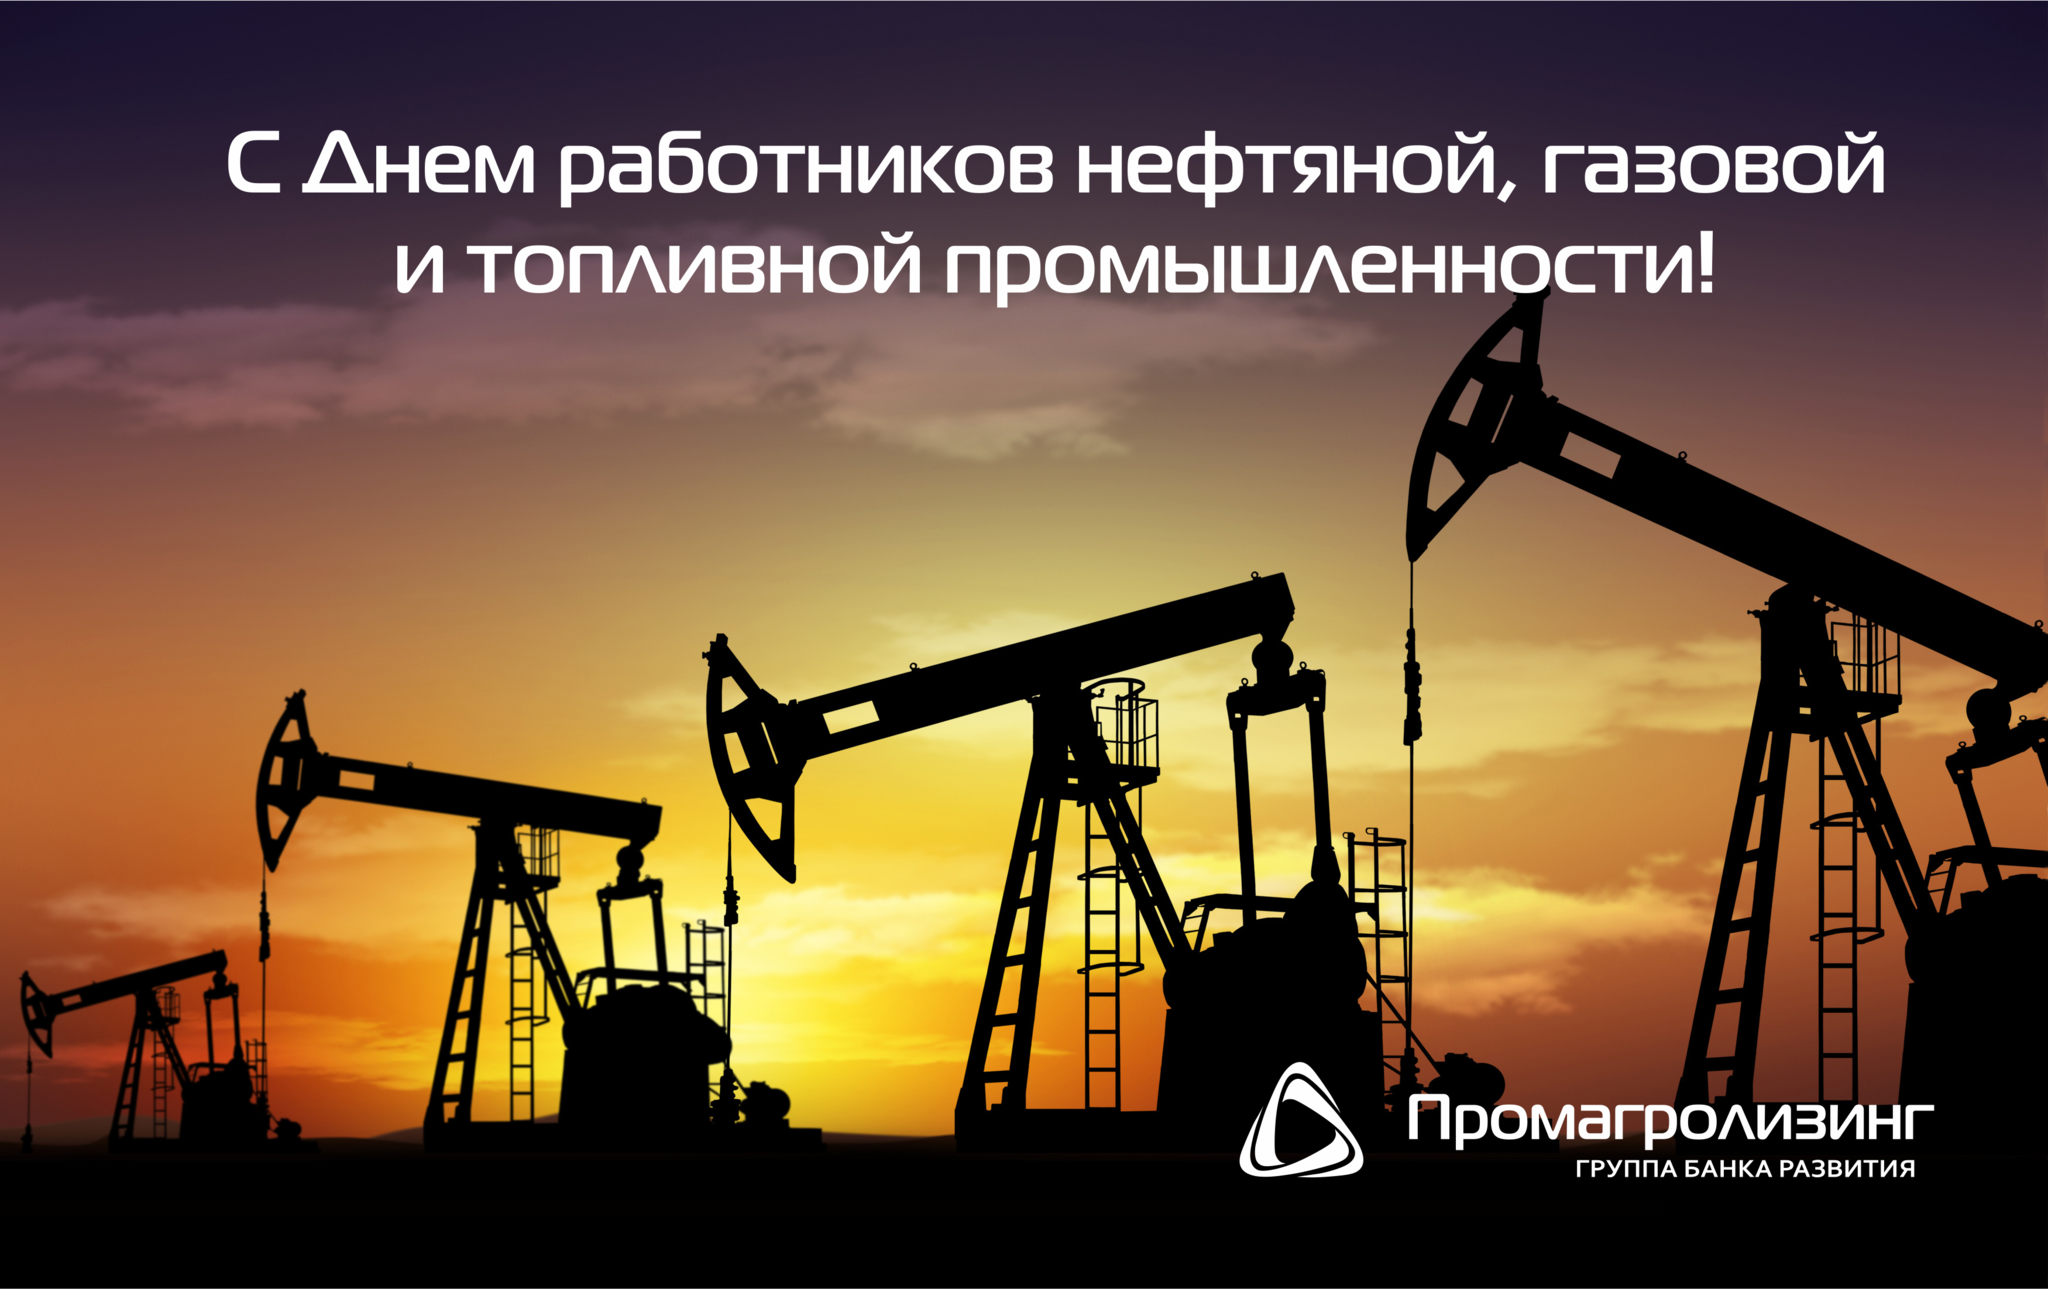 ОАО «Промагролизинг» поздравляет с Днем работников нефтяной, газовой и топливной промышленности